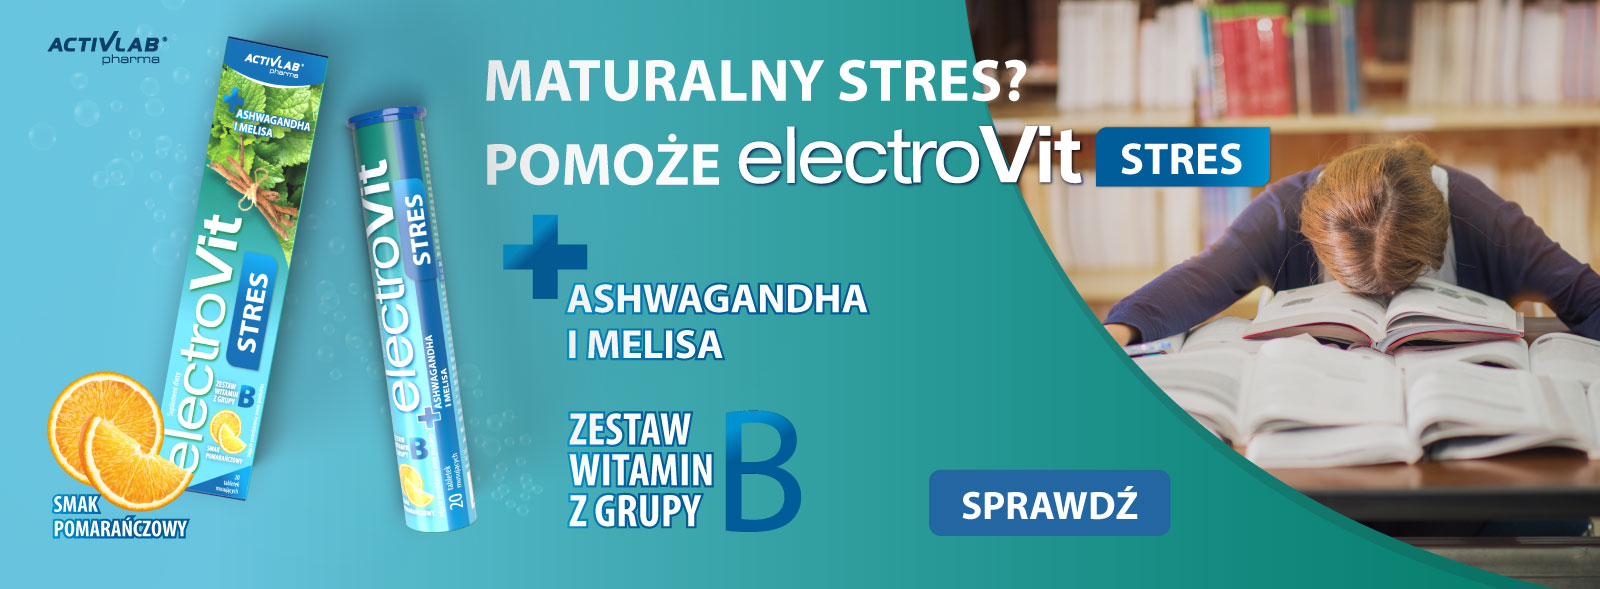 electroVit STRES